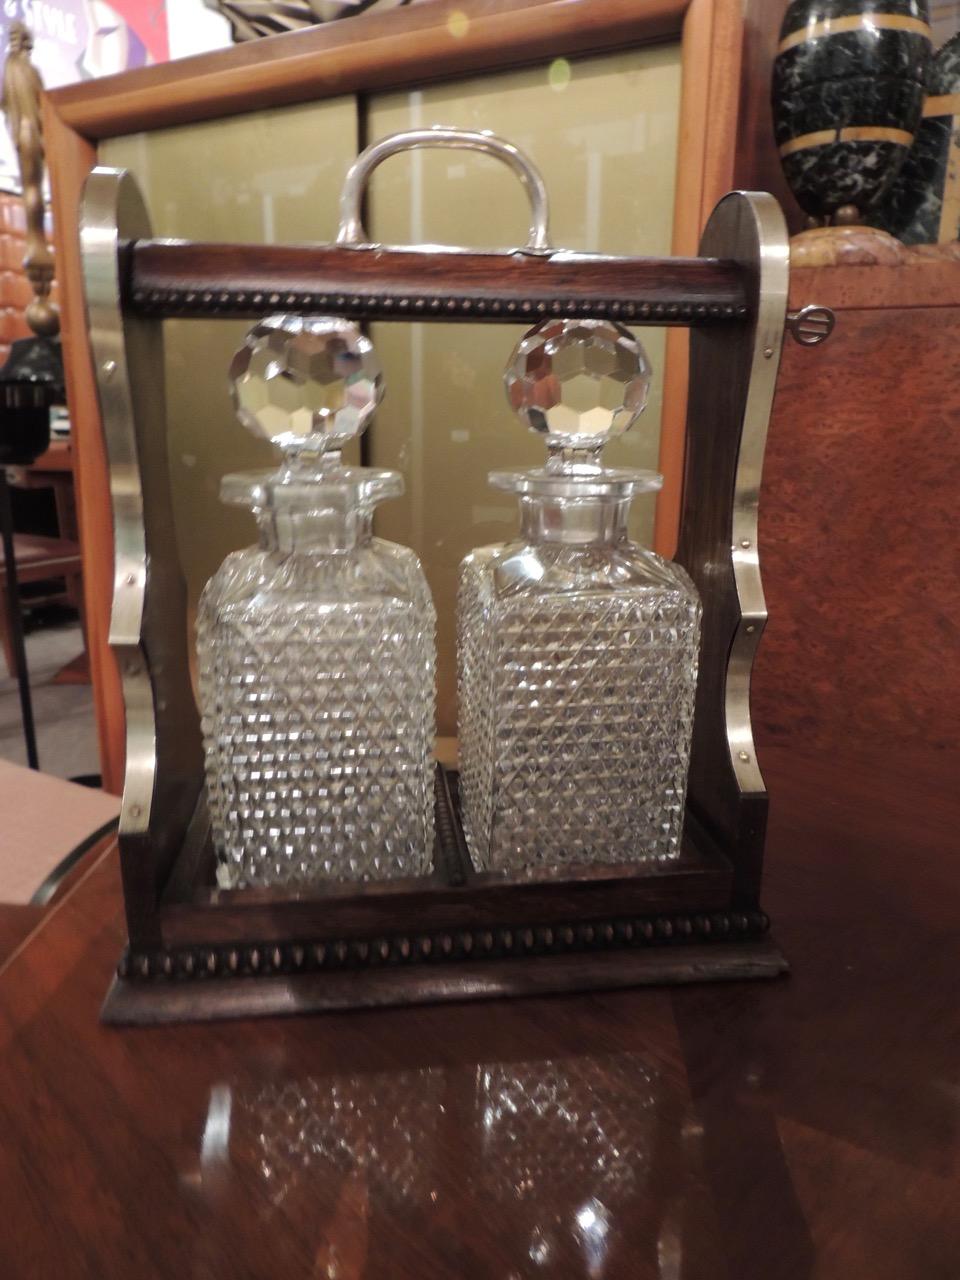 Ein Tantalus aus den 1920er Jahren mit Kristallkaraffen, einem reichhaltigen, mit Nickel verkleideten Holzkasten mit Schloss und Schlüssel. Hochfacettierte Flaschenverschlüsse reflektieren das Licht wunderschön. Es ist ein perfektes Stück zum